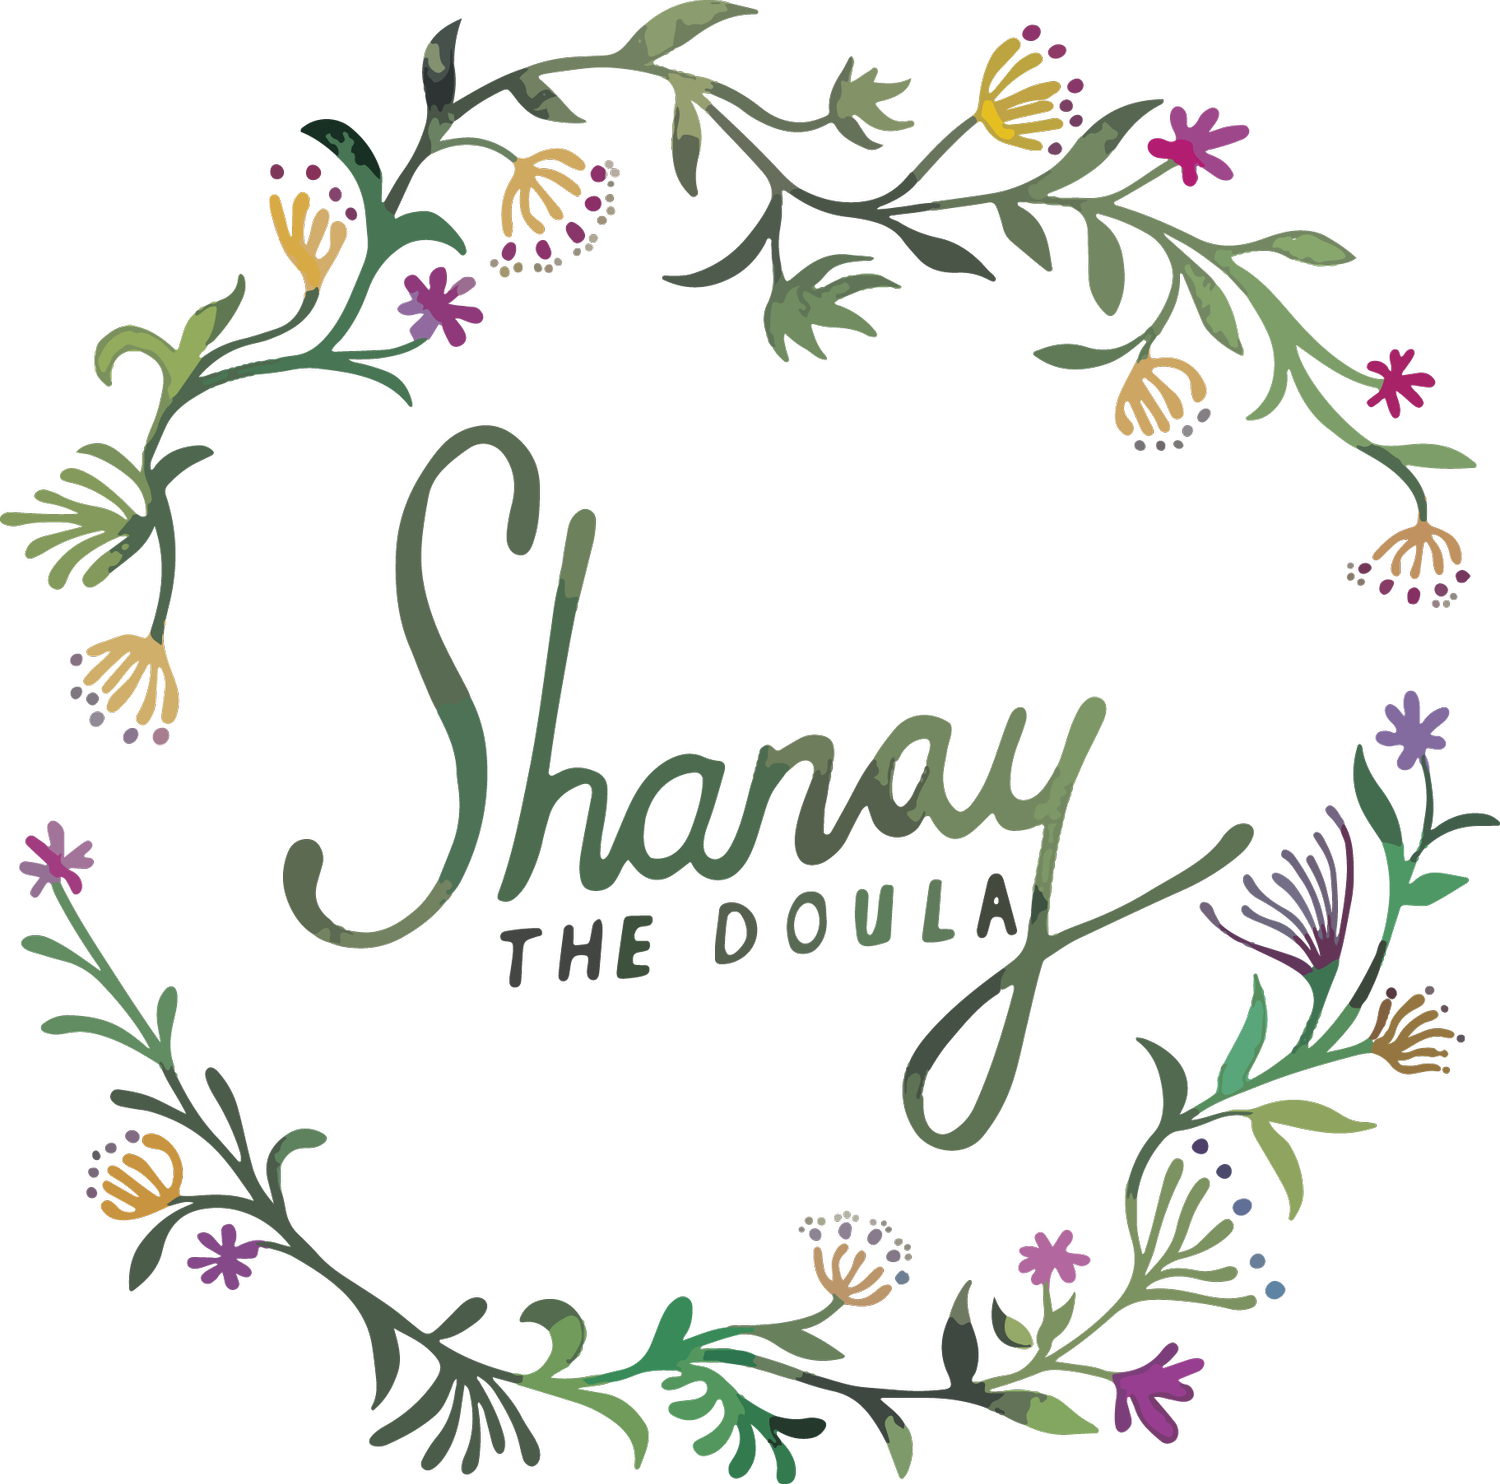 Shanay the Doula (Copy)